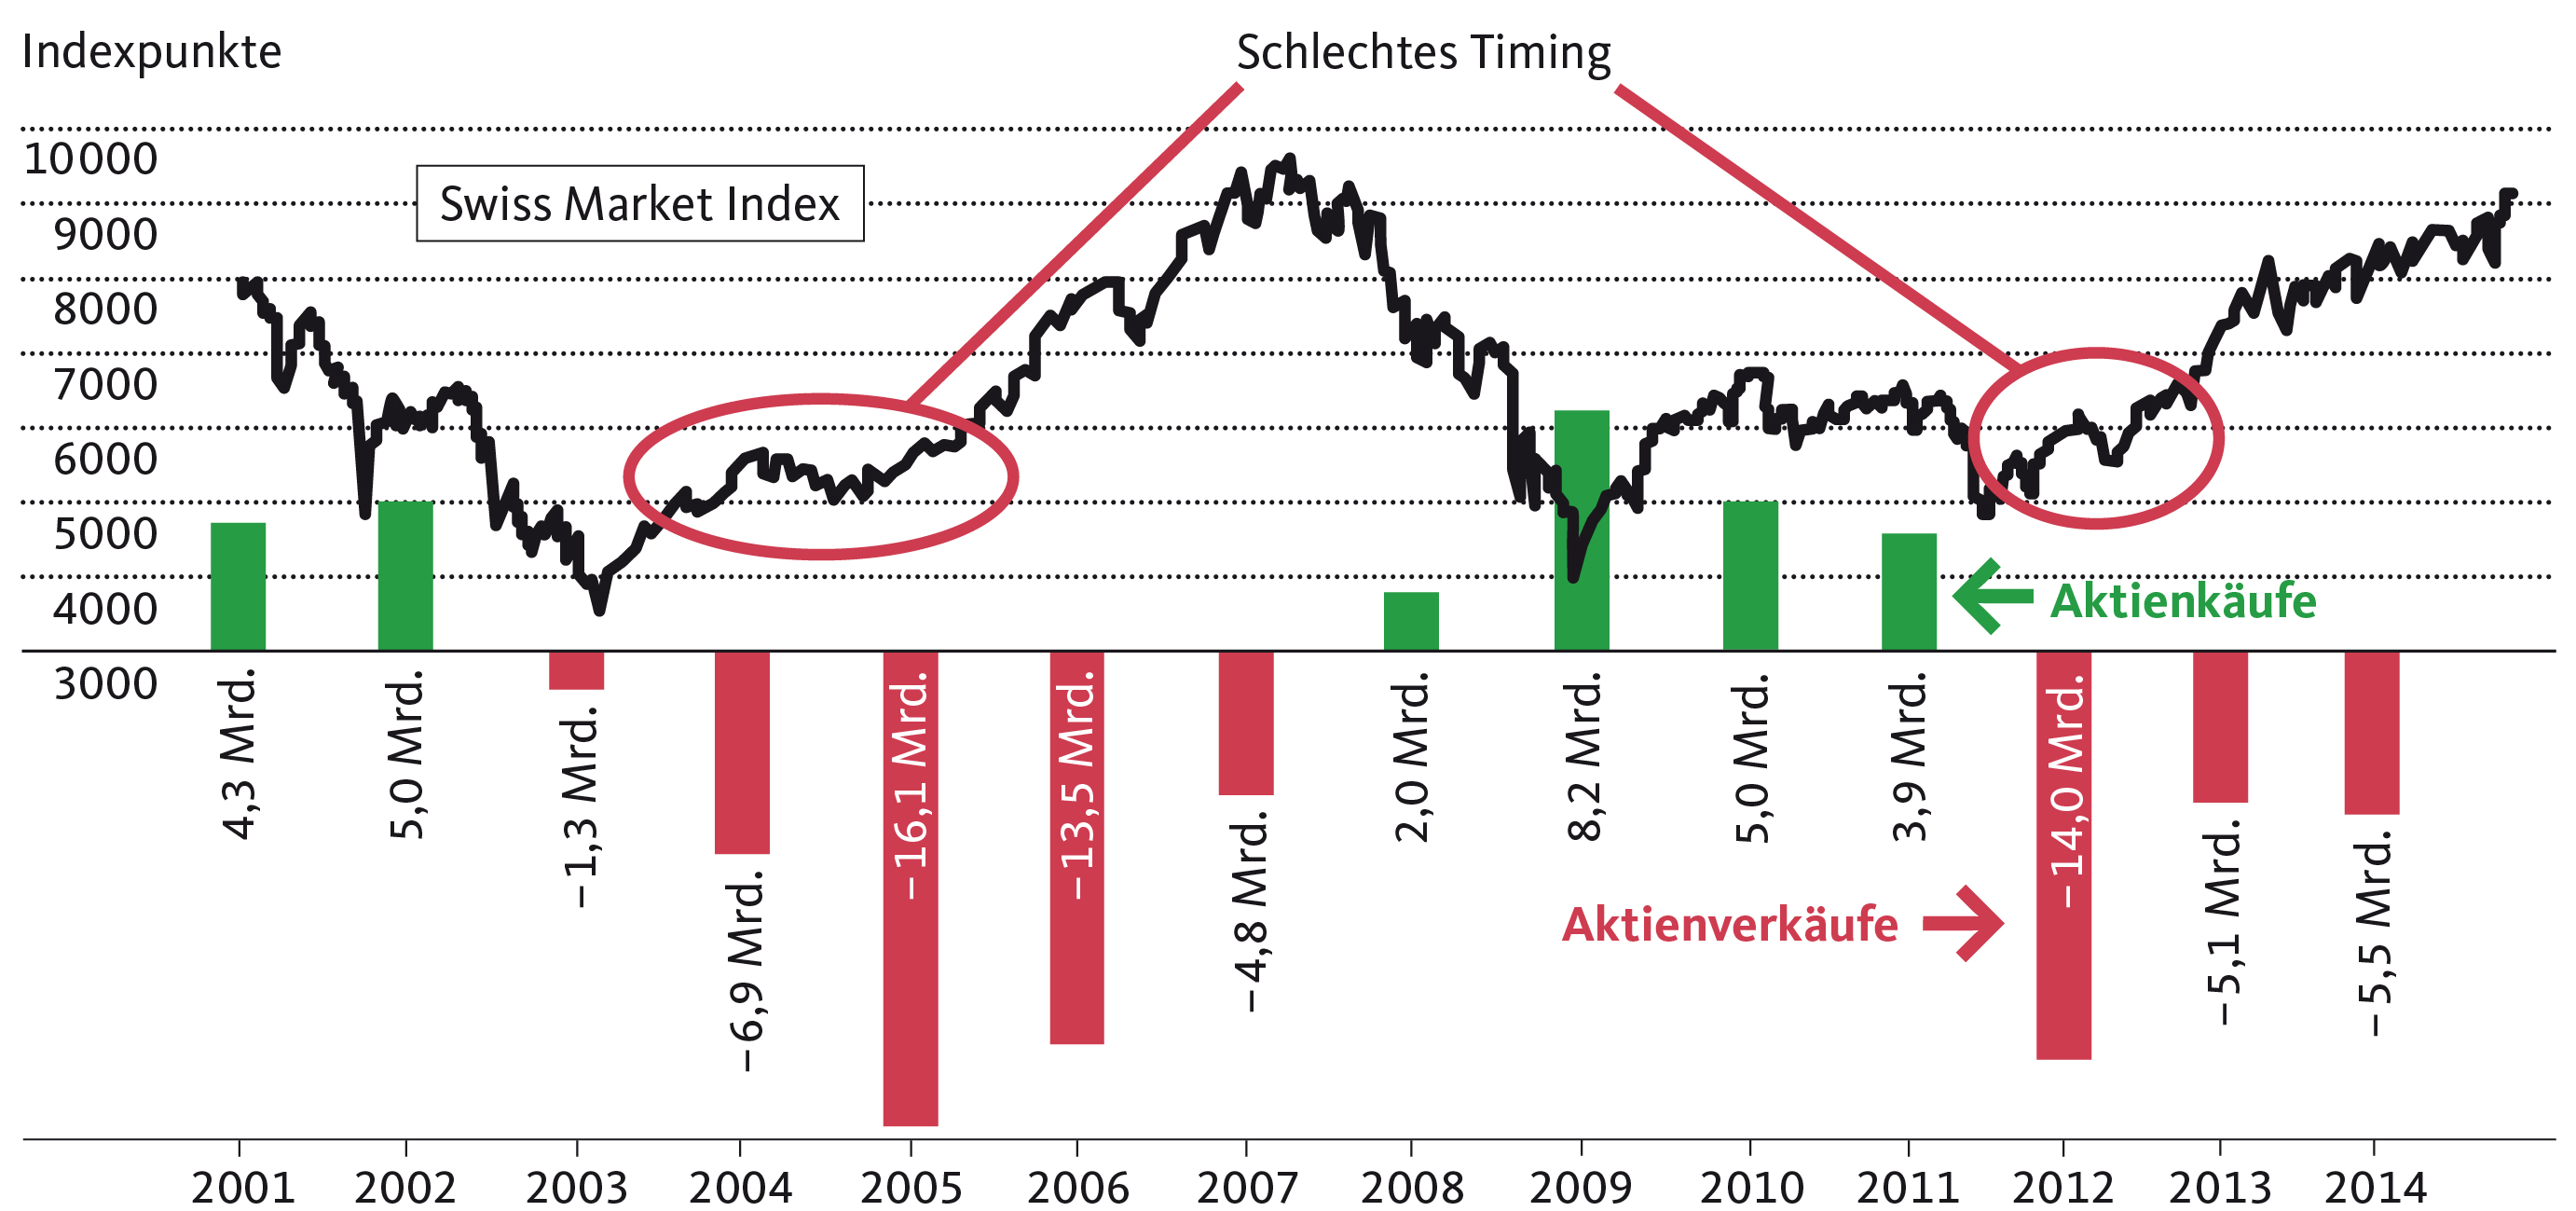 Die privaten Schweizer Haushalte haben ihre Aktienbestände zu einem ungünstigen Zeitpunkt reduziert, nämlich in den frühen Phasen des Börsenaufschwungs in den Jahren 2005 und 2012. Die Darstellung enthält die aggregierten jährlichen Aktientransaktionen der Haushalte in der Schweiz (Daten: SNB).